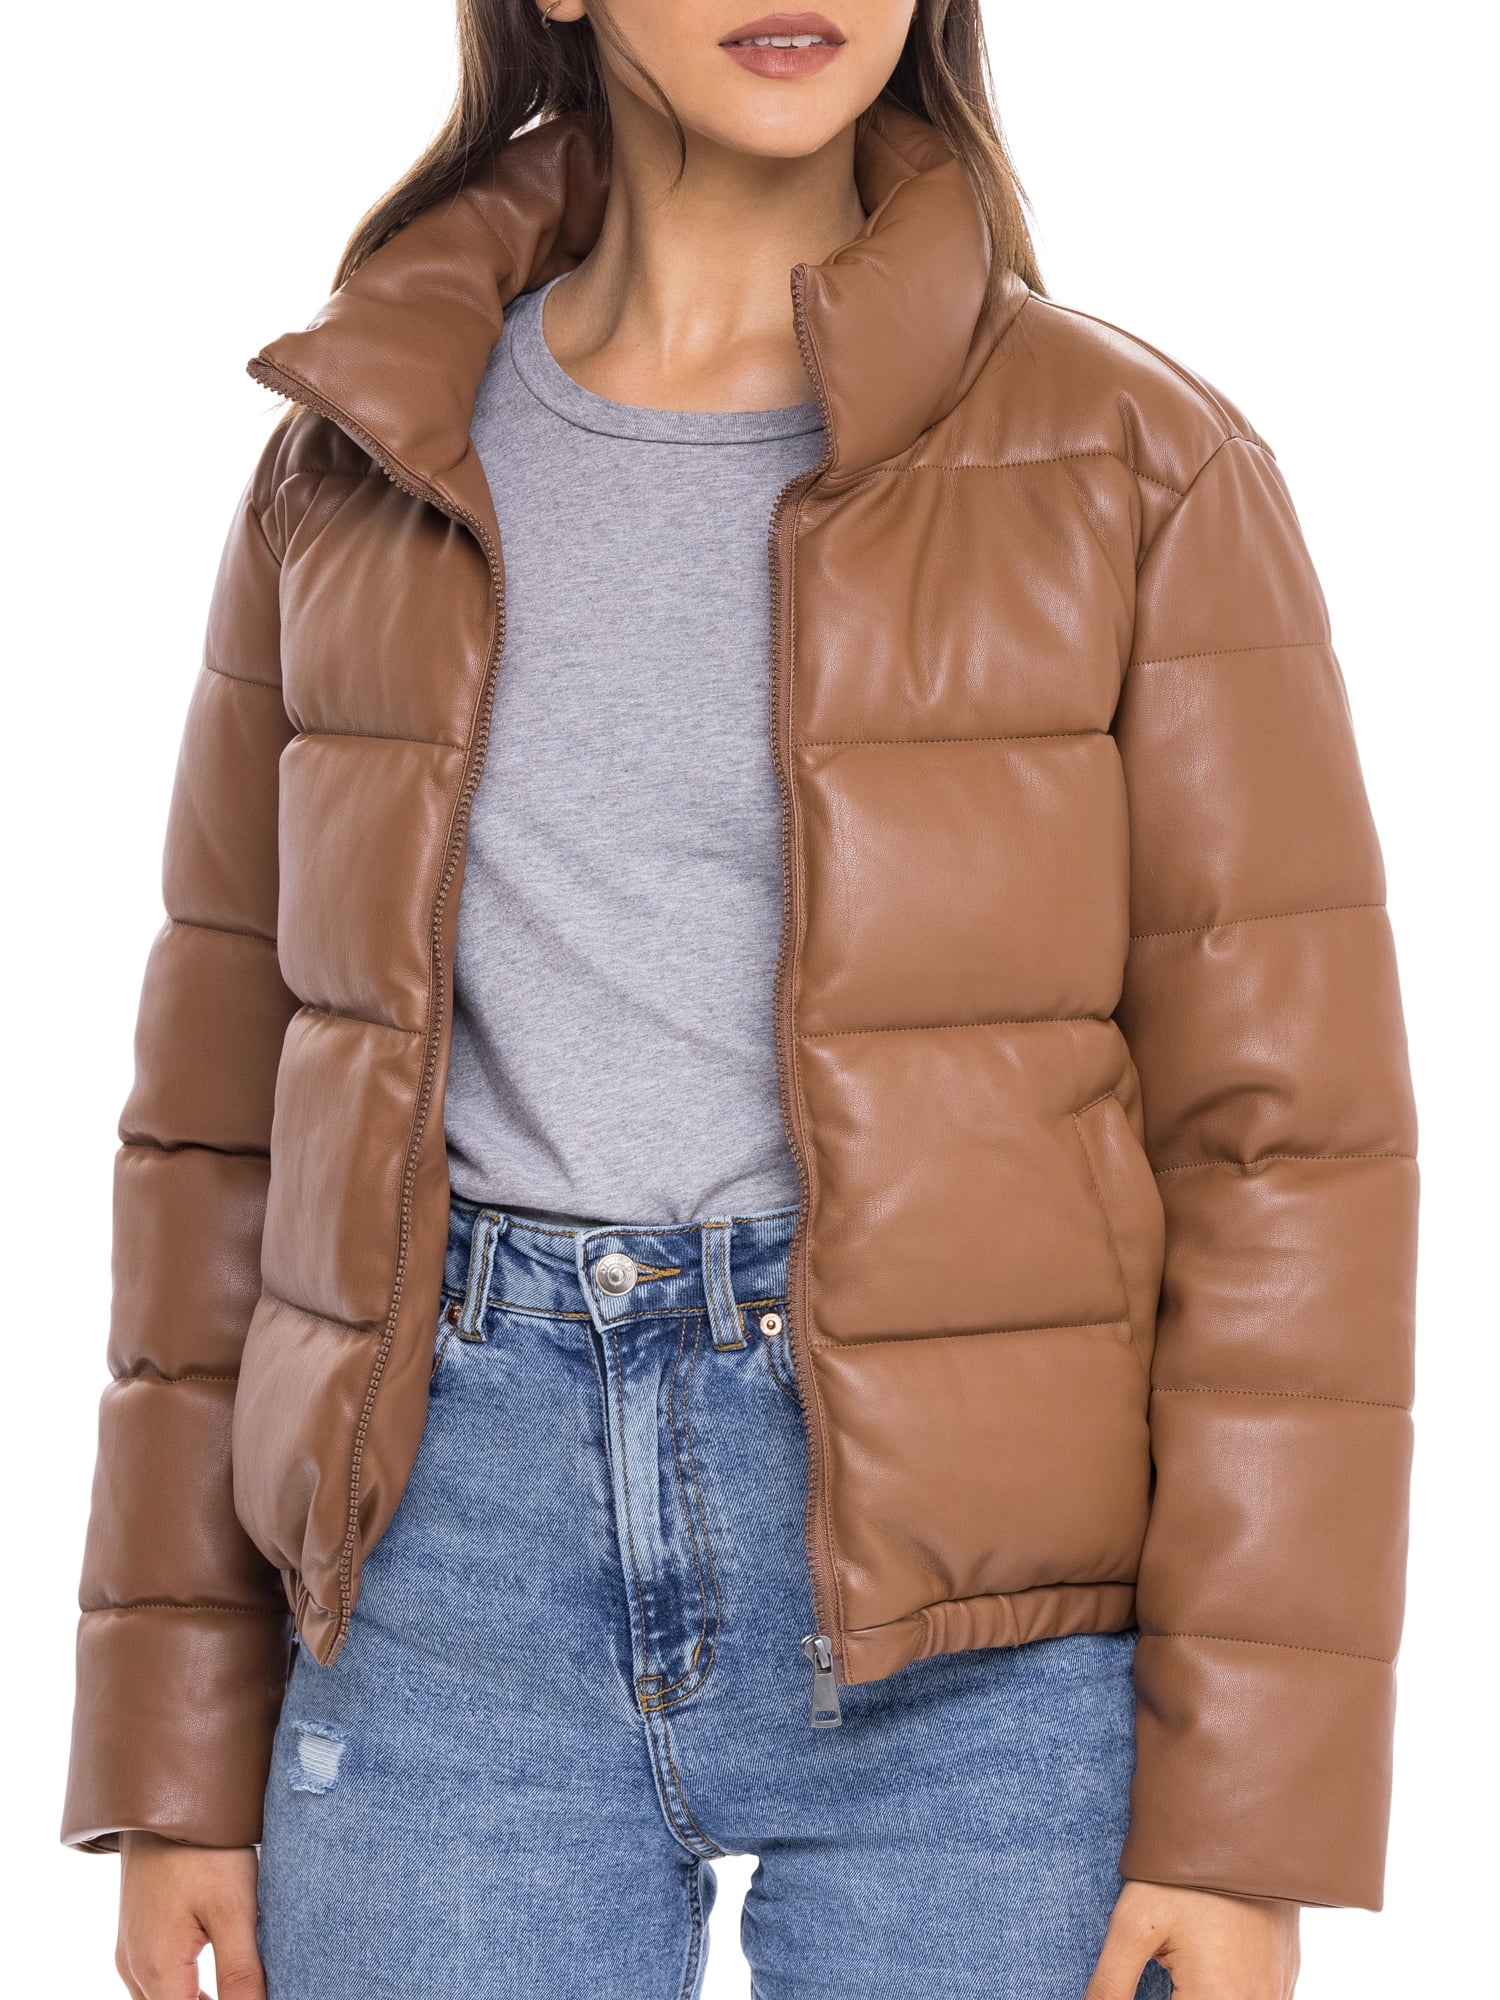 S.E.B. by Sebby Faux Leather Puffer Jacket (Women’s) - Walmart.com